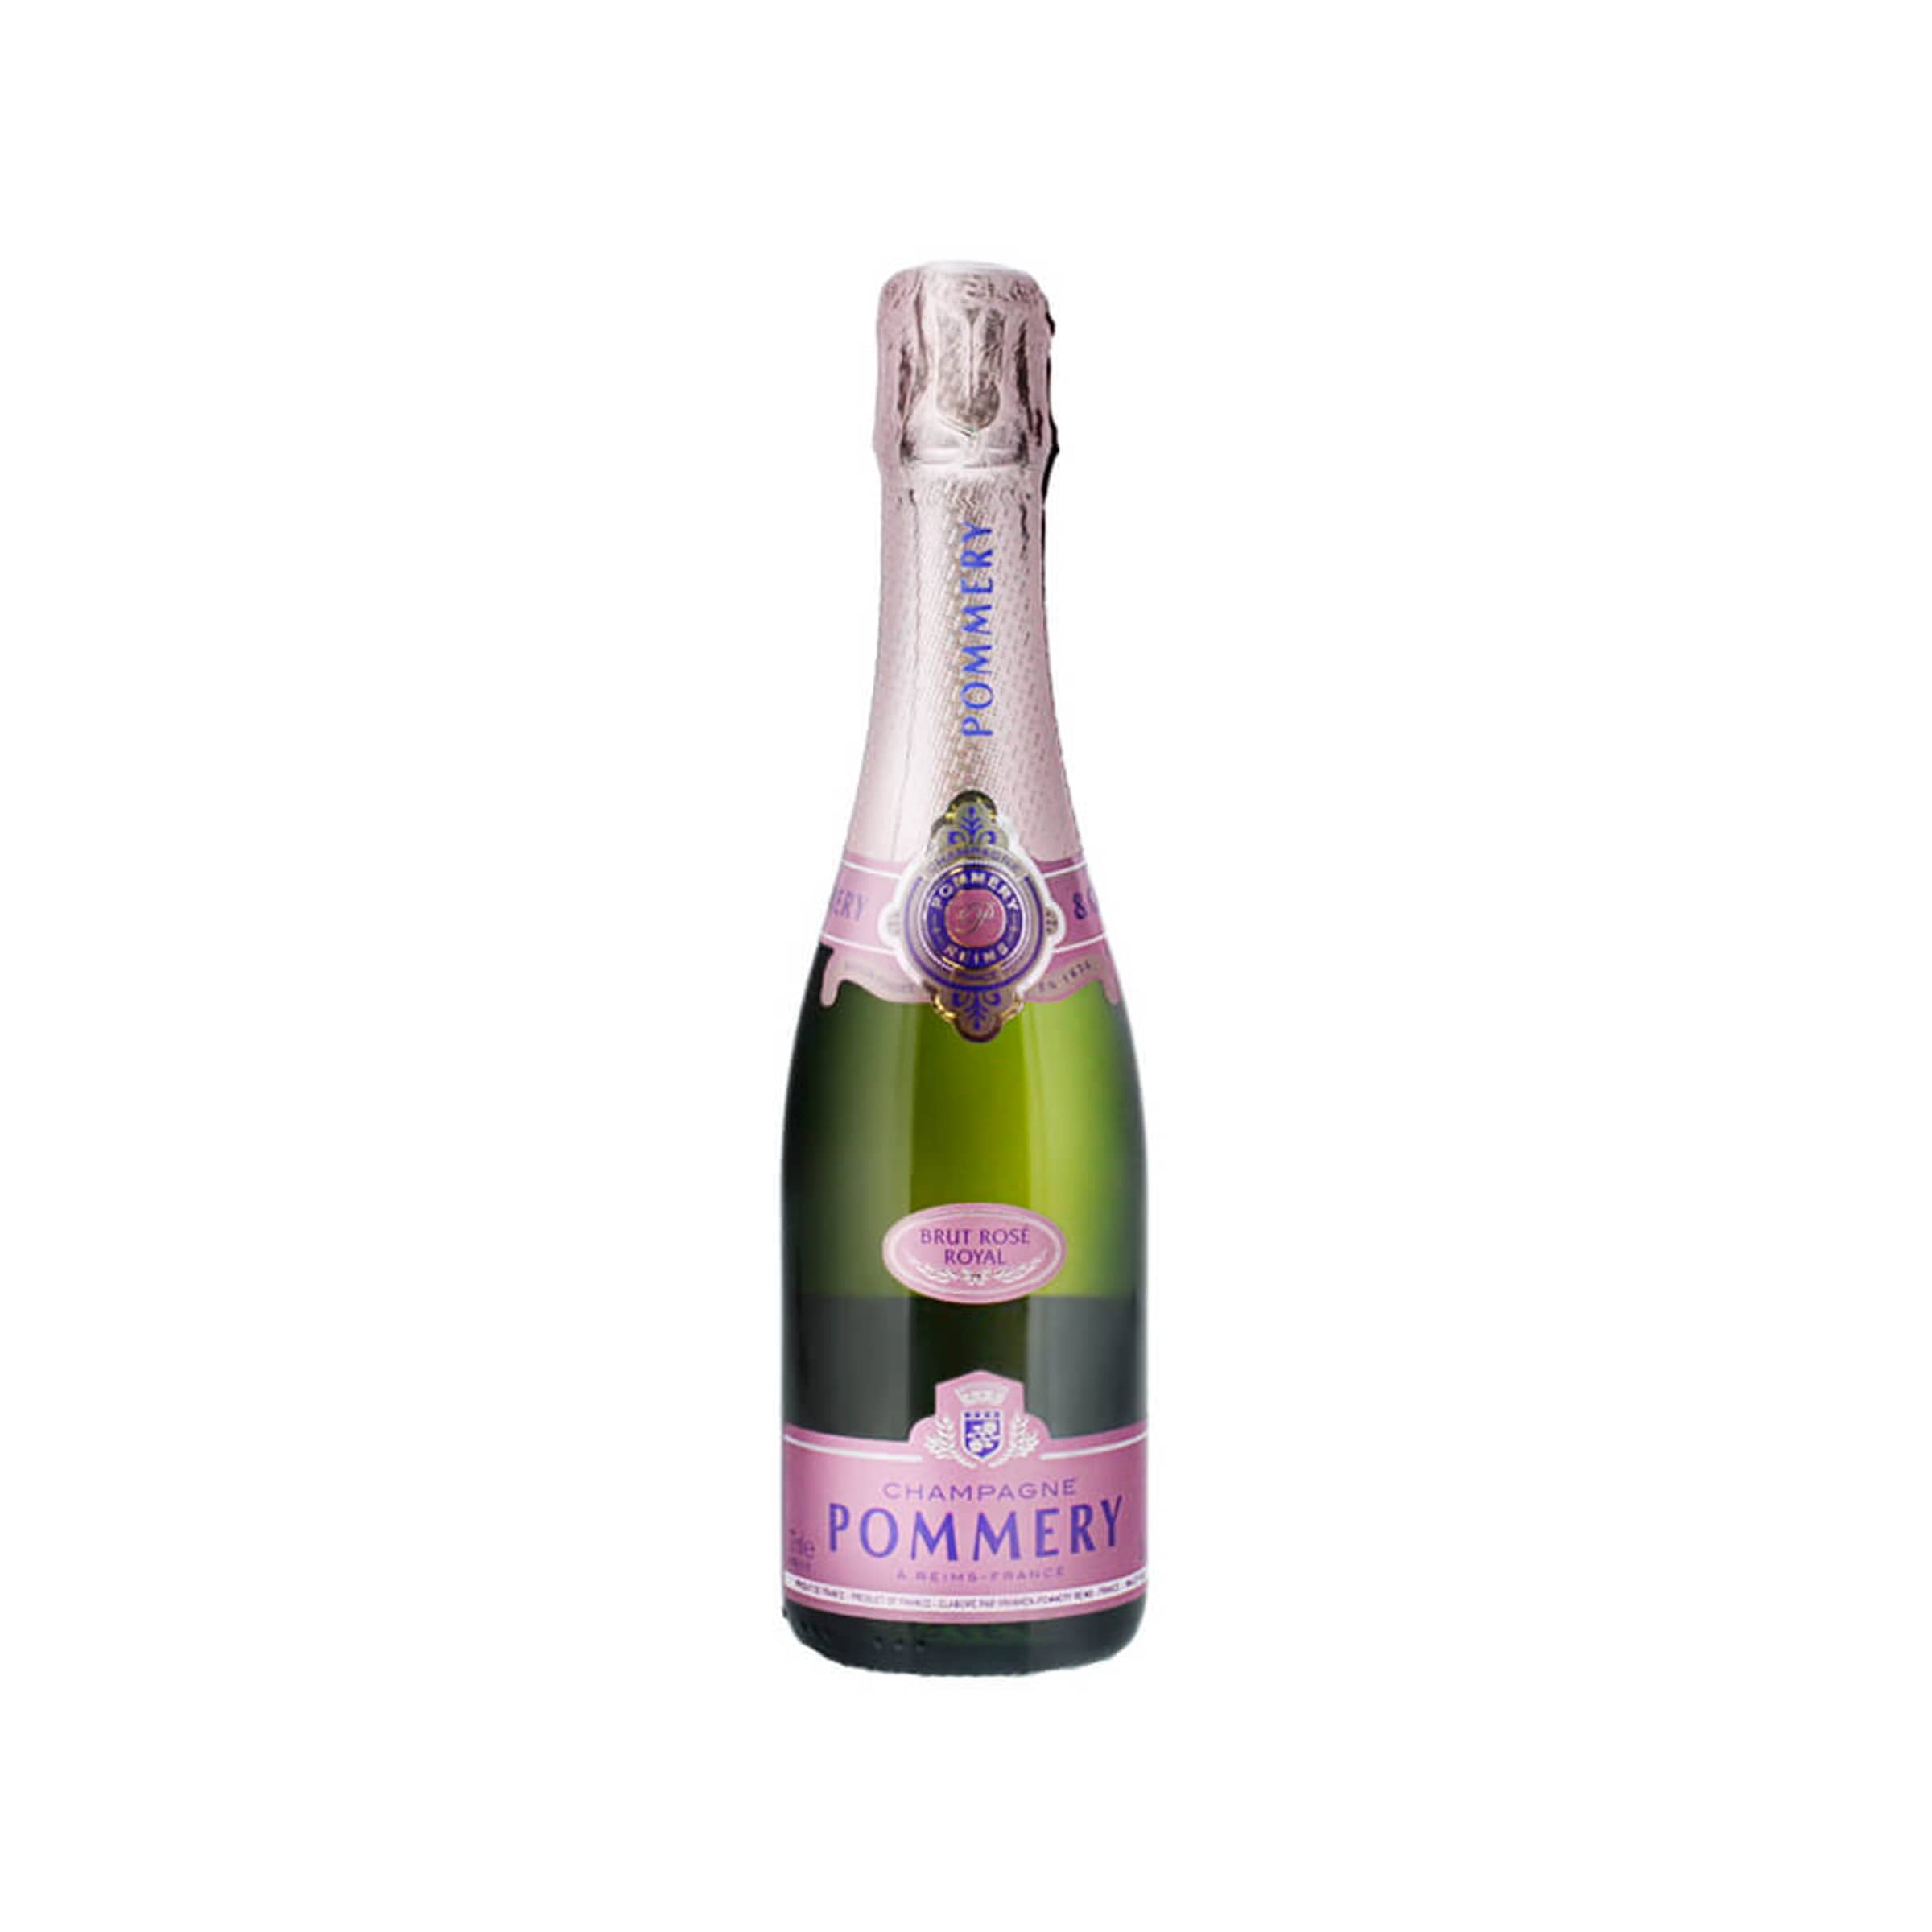 Pommery Royal Champagner 37.5cl Rosé Brut